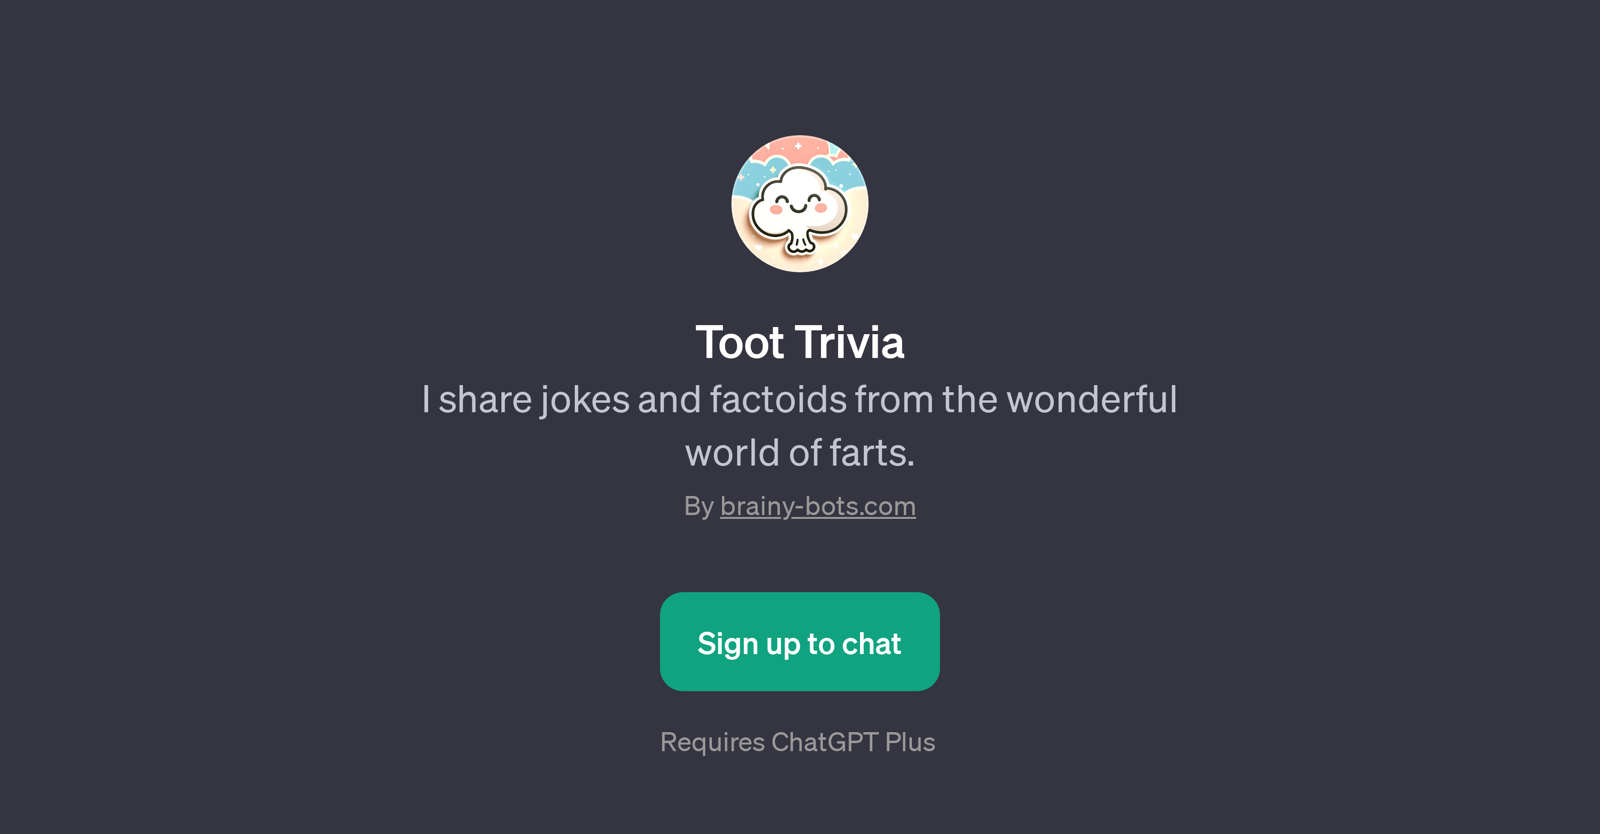 Toot Trivia website